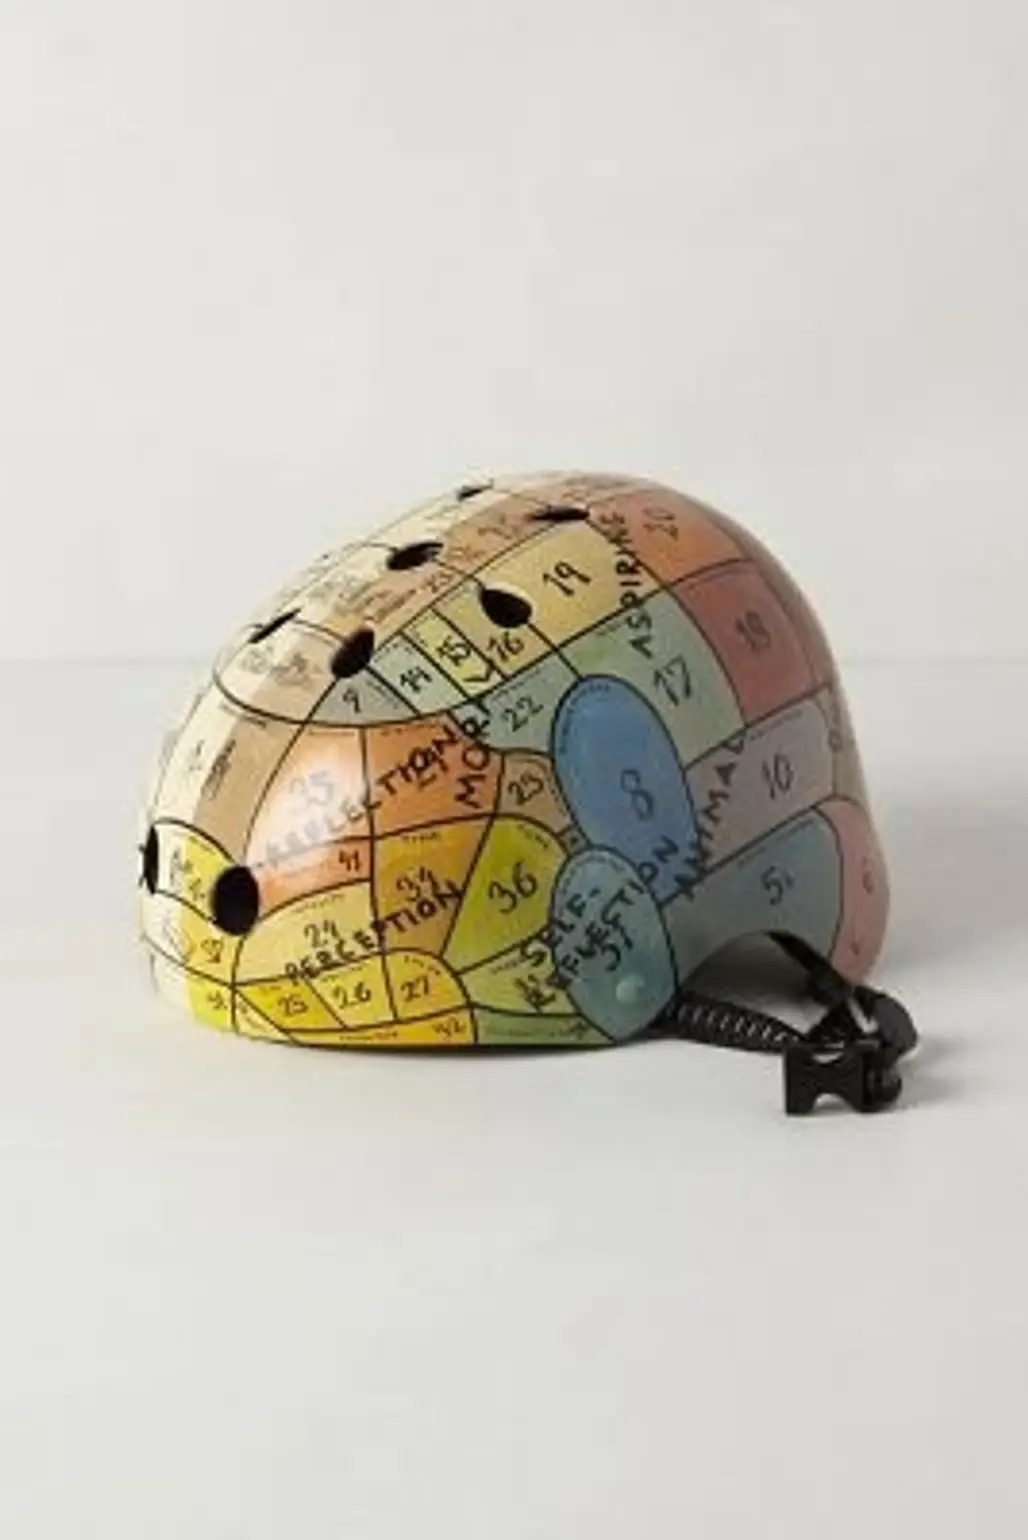 Handpainted Bike Helmet by Anthropologie